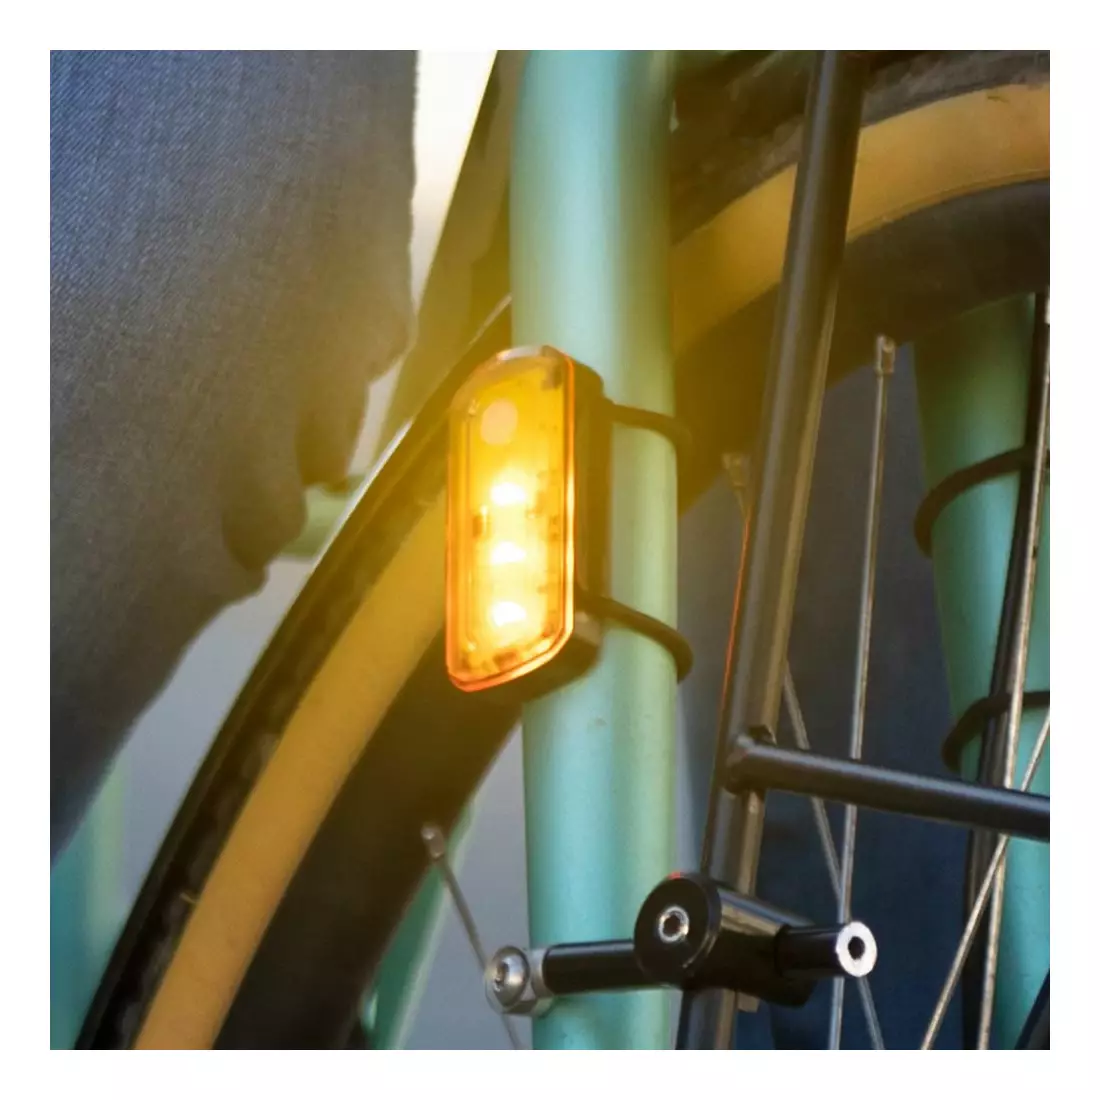 BLACKBURN set de lumini pentru biciclete LUMINATE 360 blitz față + spate + lateral